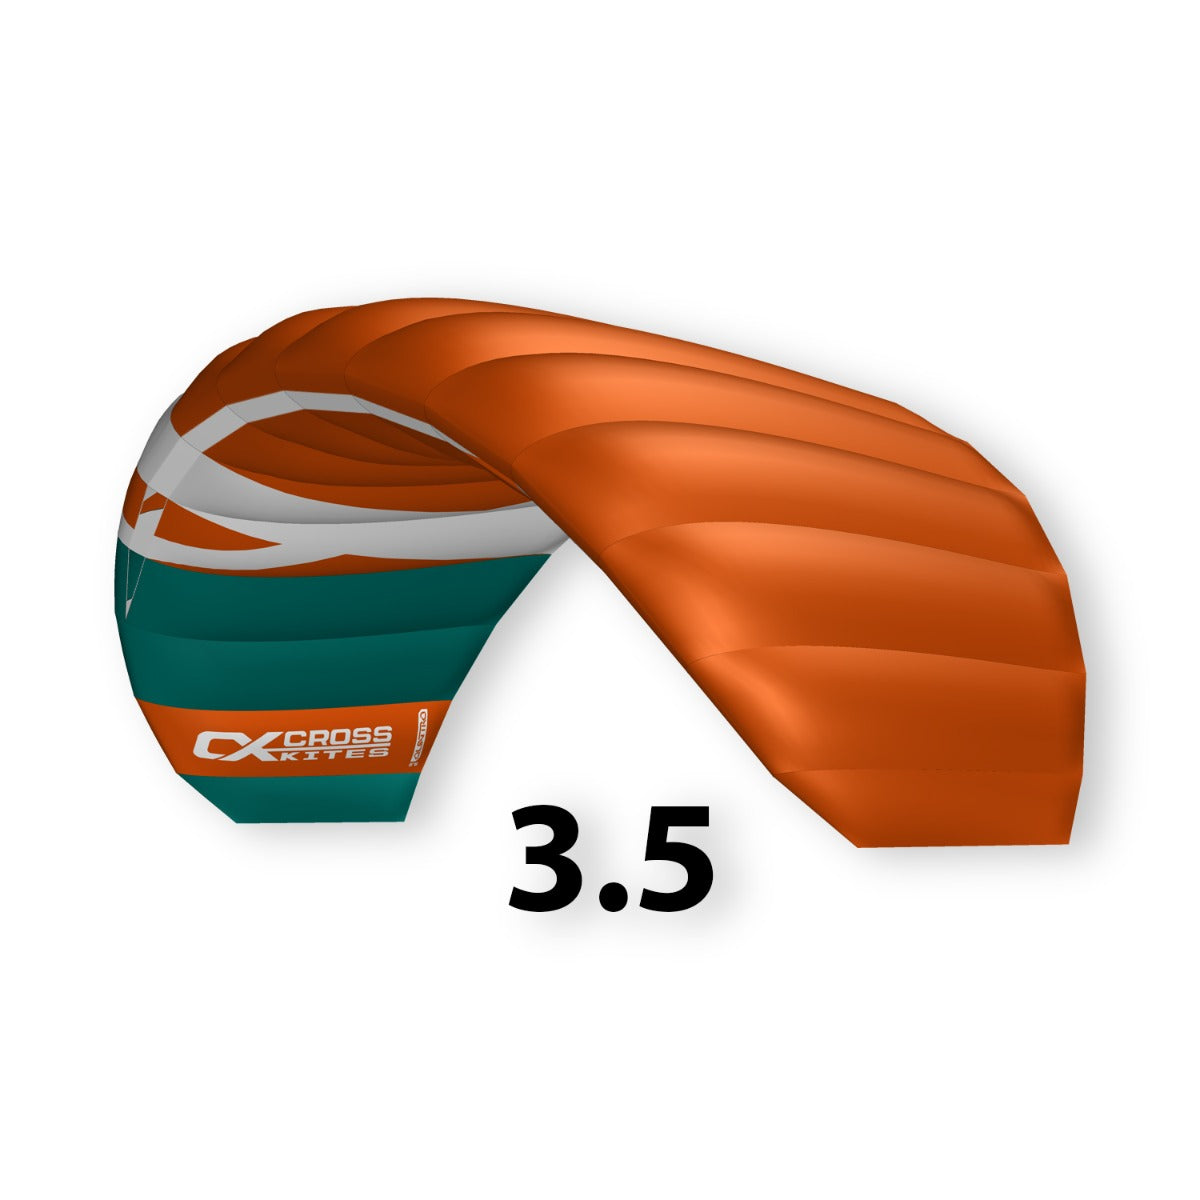 CrossKites Quattro 3.5 Orange Lenkmatte Vierleiner Lenkdrachen Kite Flugdrachen R2F